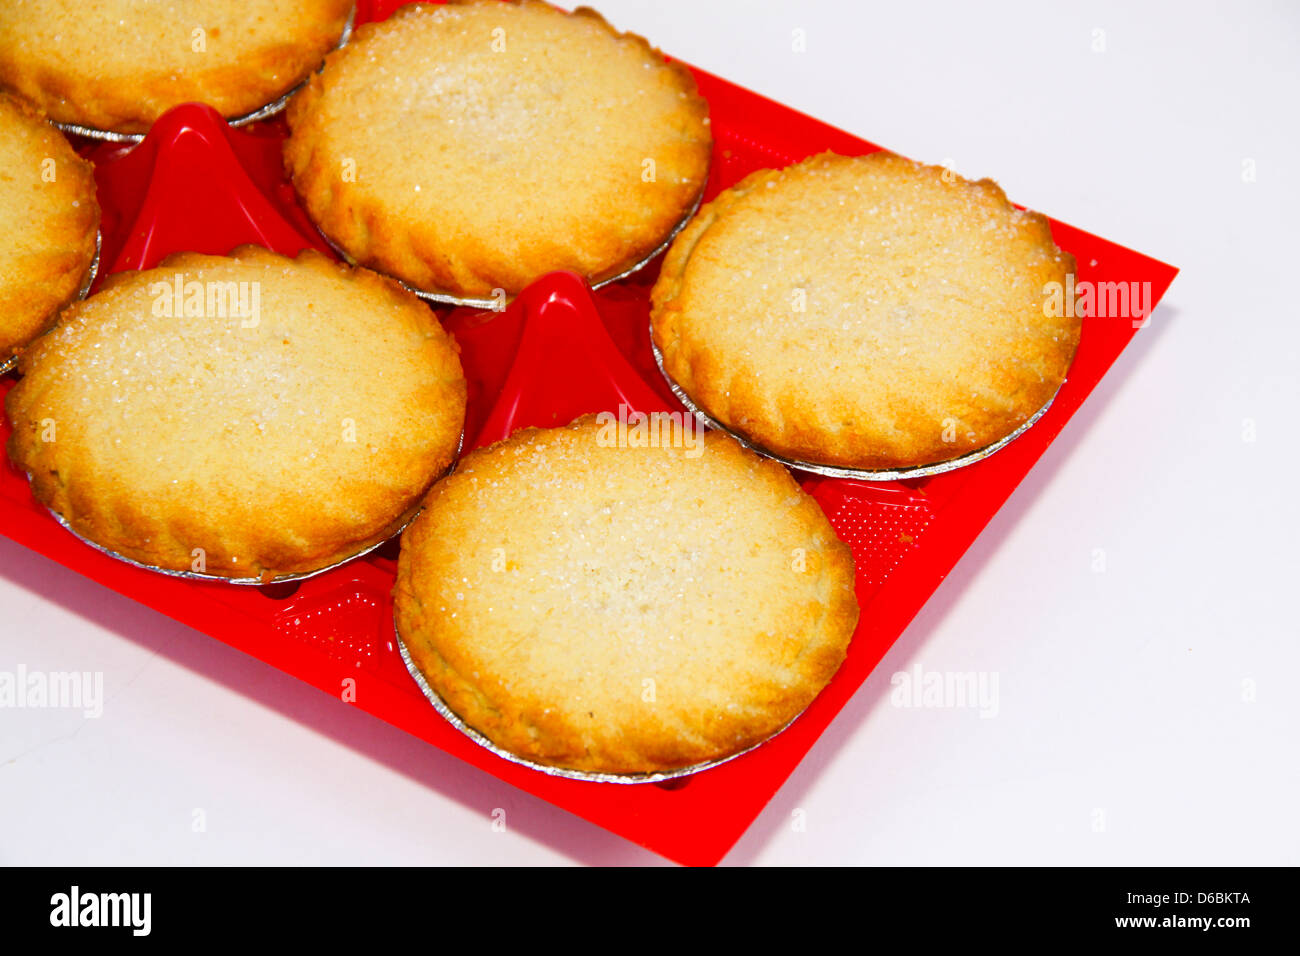 Shop acquistato singoli torte di mele nel vassoio di plastica Foto Stock